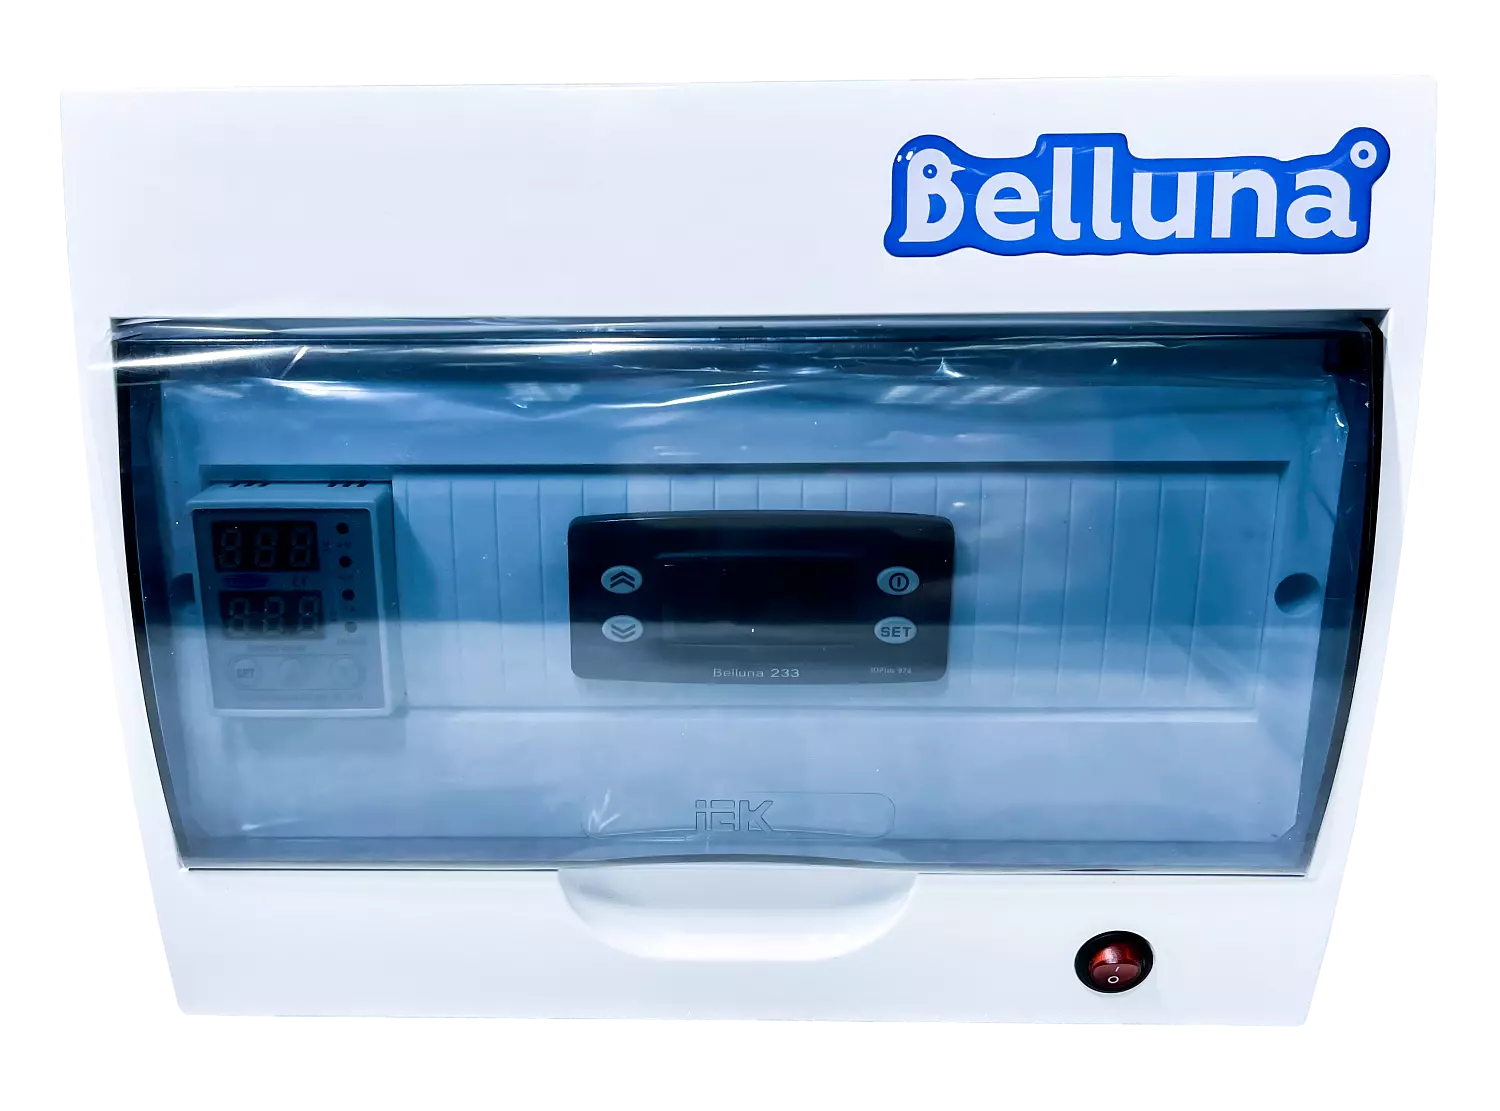 сплит-система Belluna iP-5 Уфа